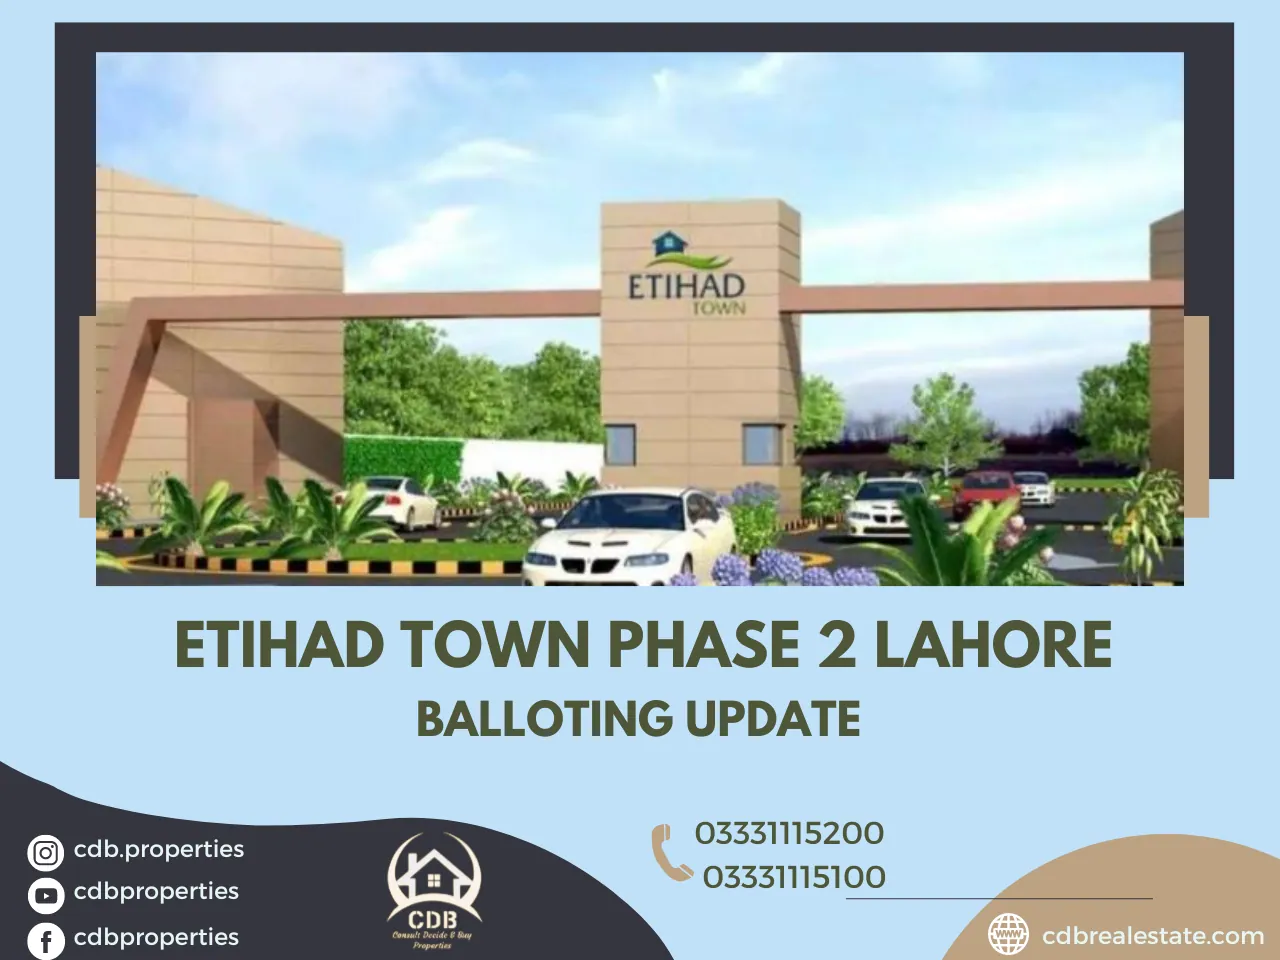 Etihad Town Phase 2 Balloting Update